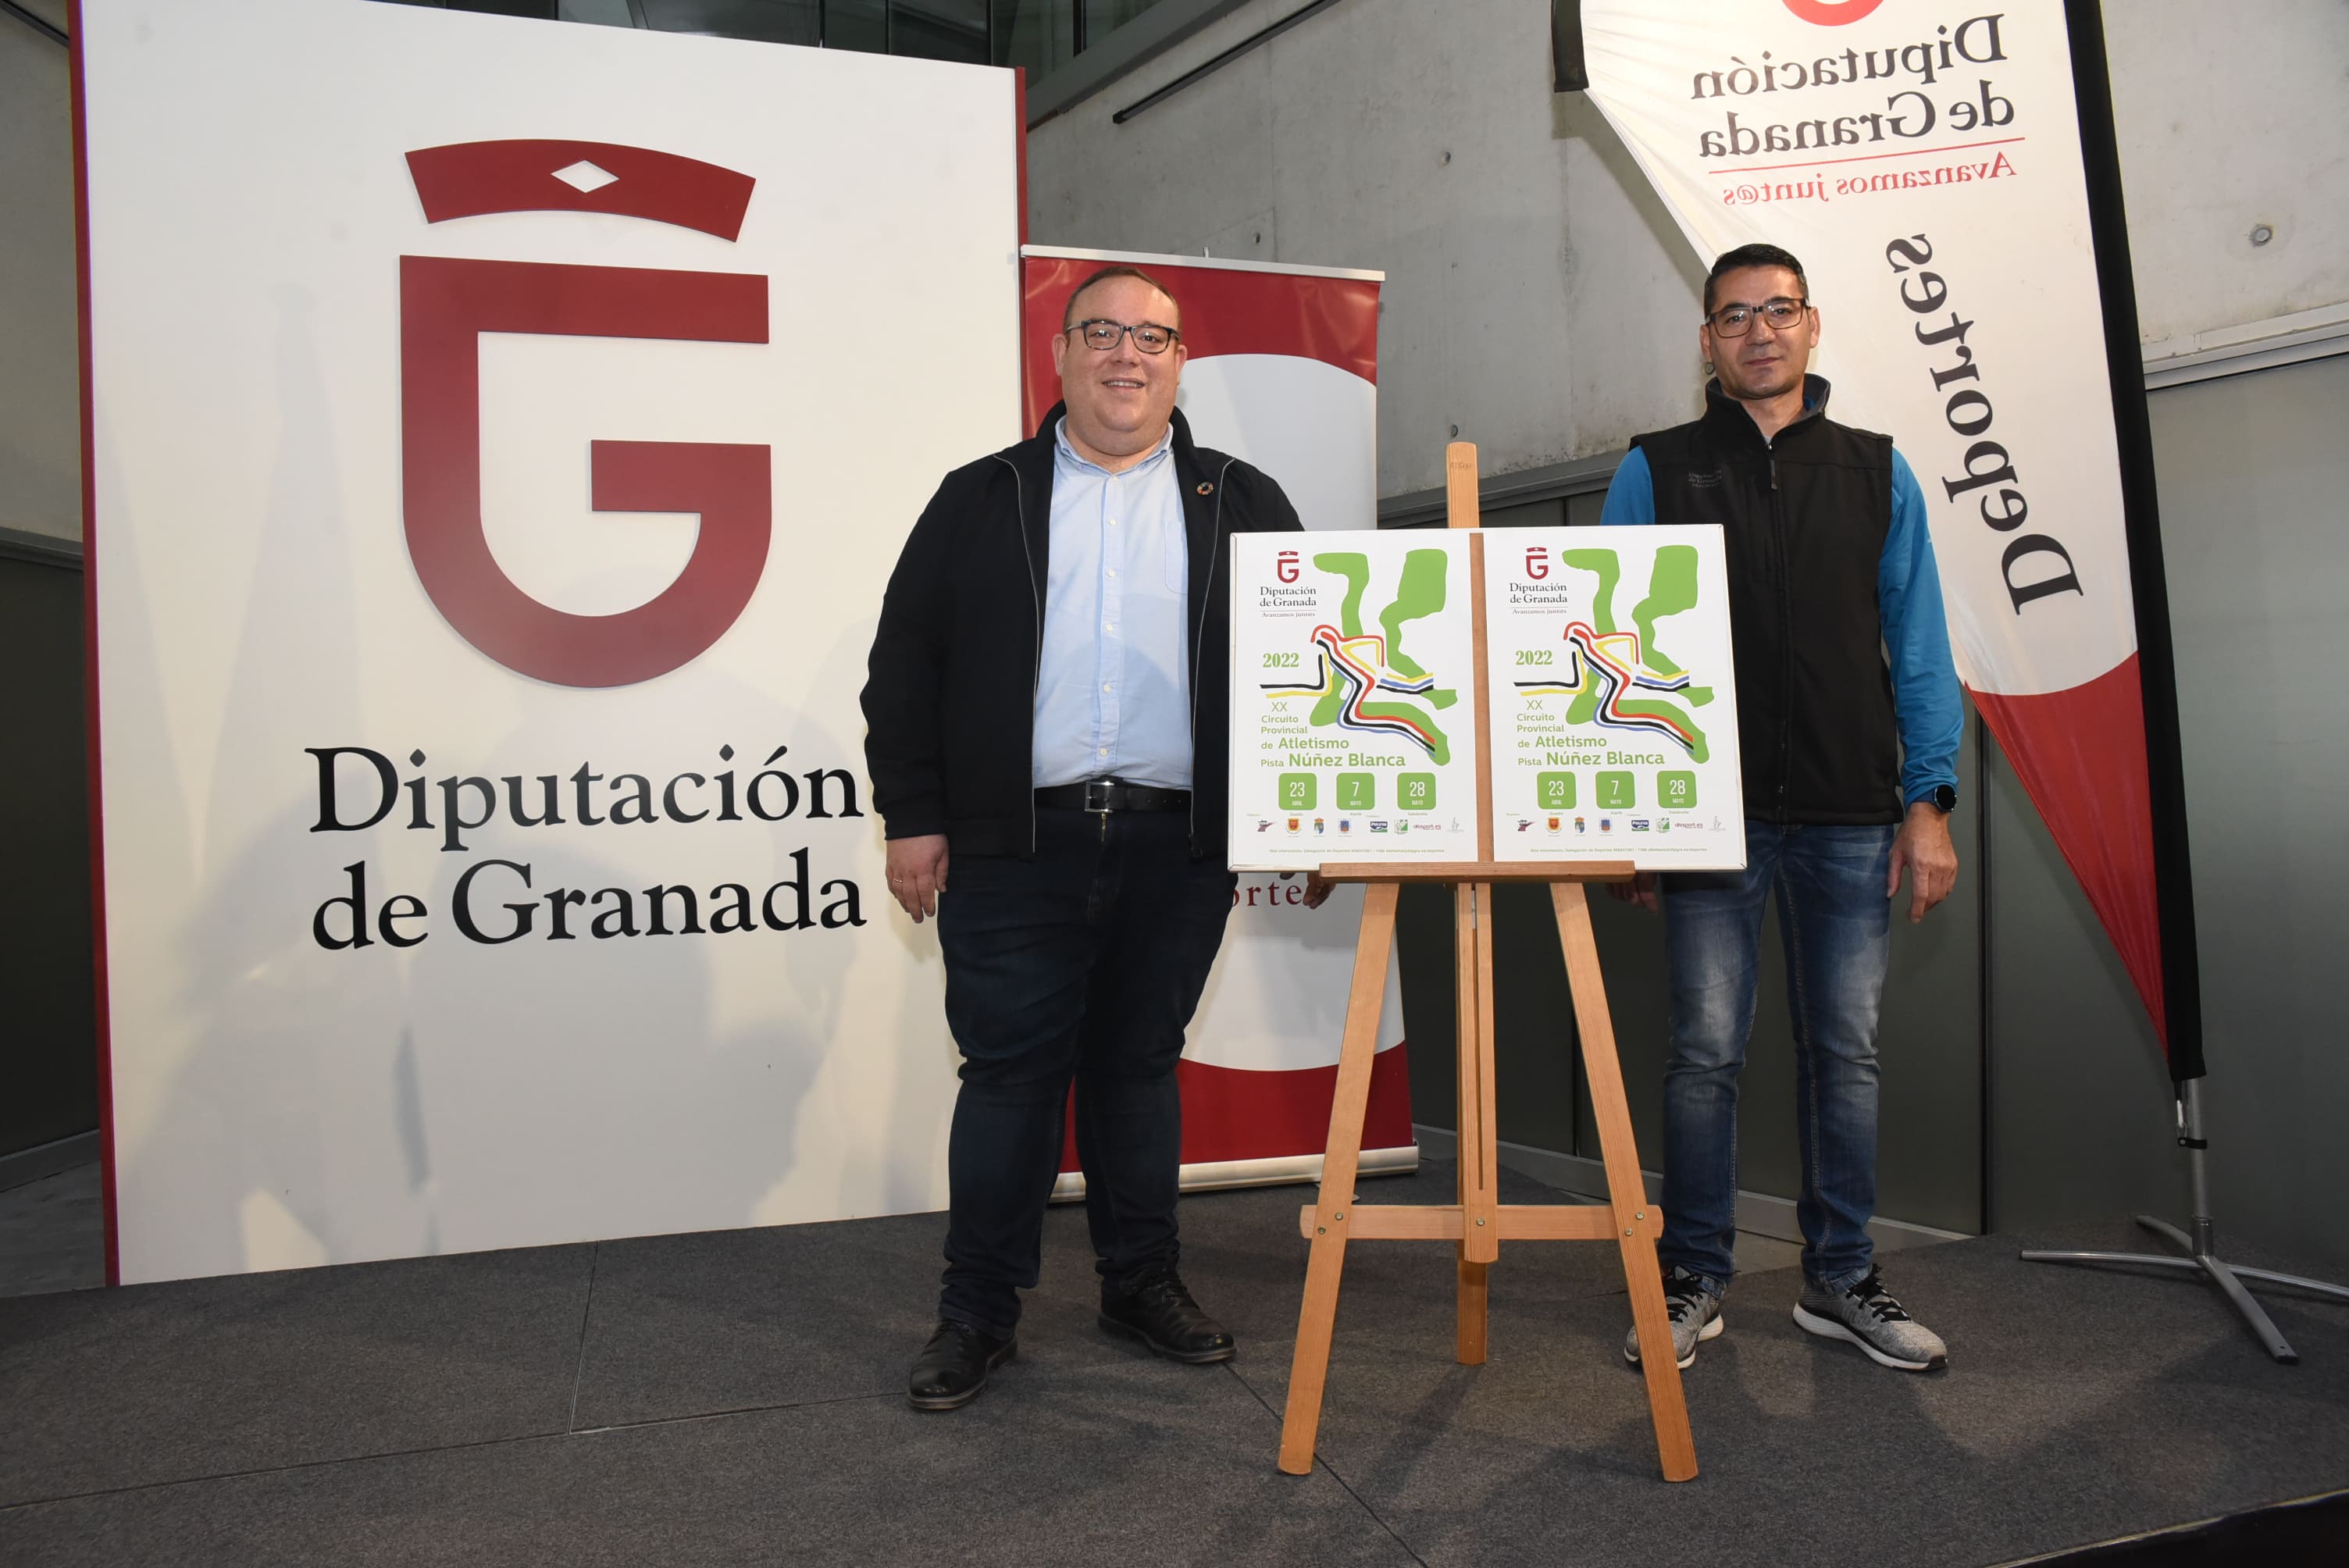 Vuelve el Circuito Provincial de Atletismo en Pista Núñez Blanca con pruebas en Guadix, Atarfe y Salobreña